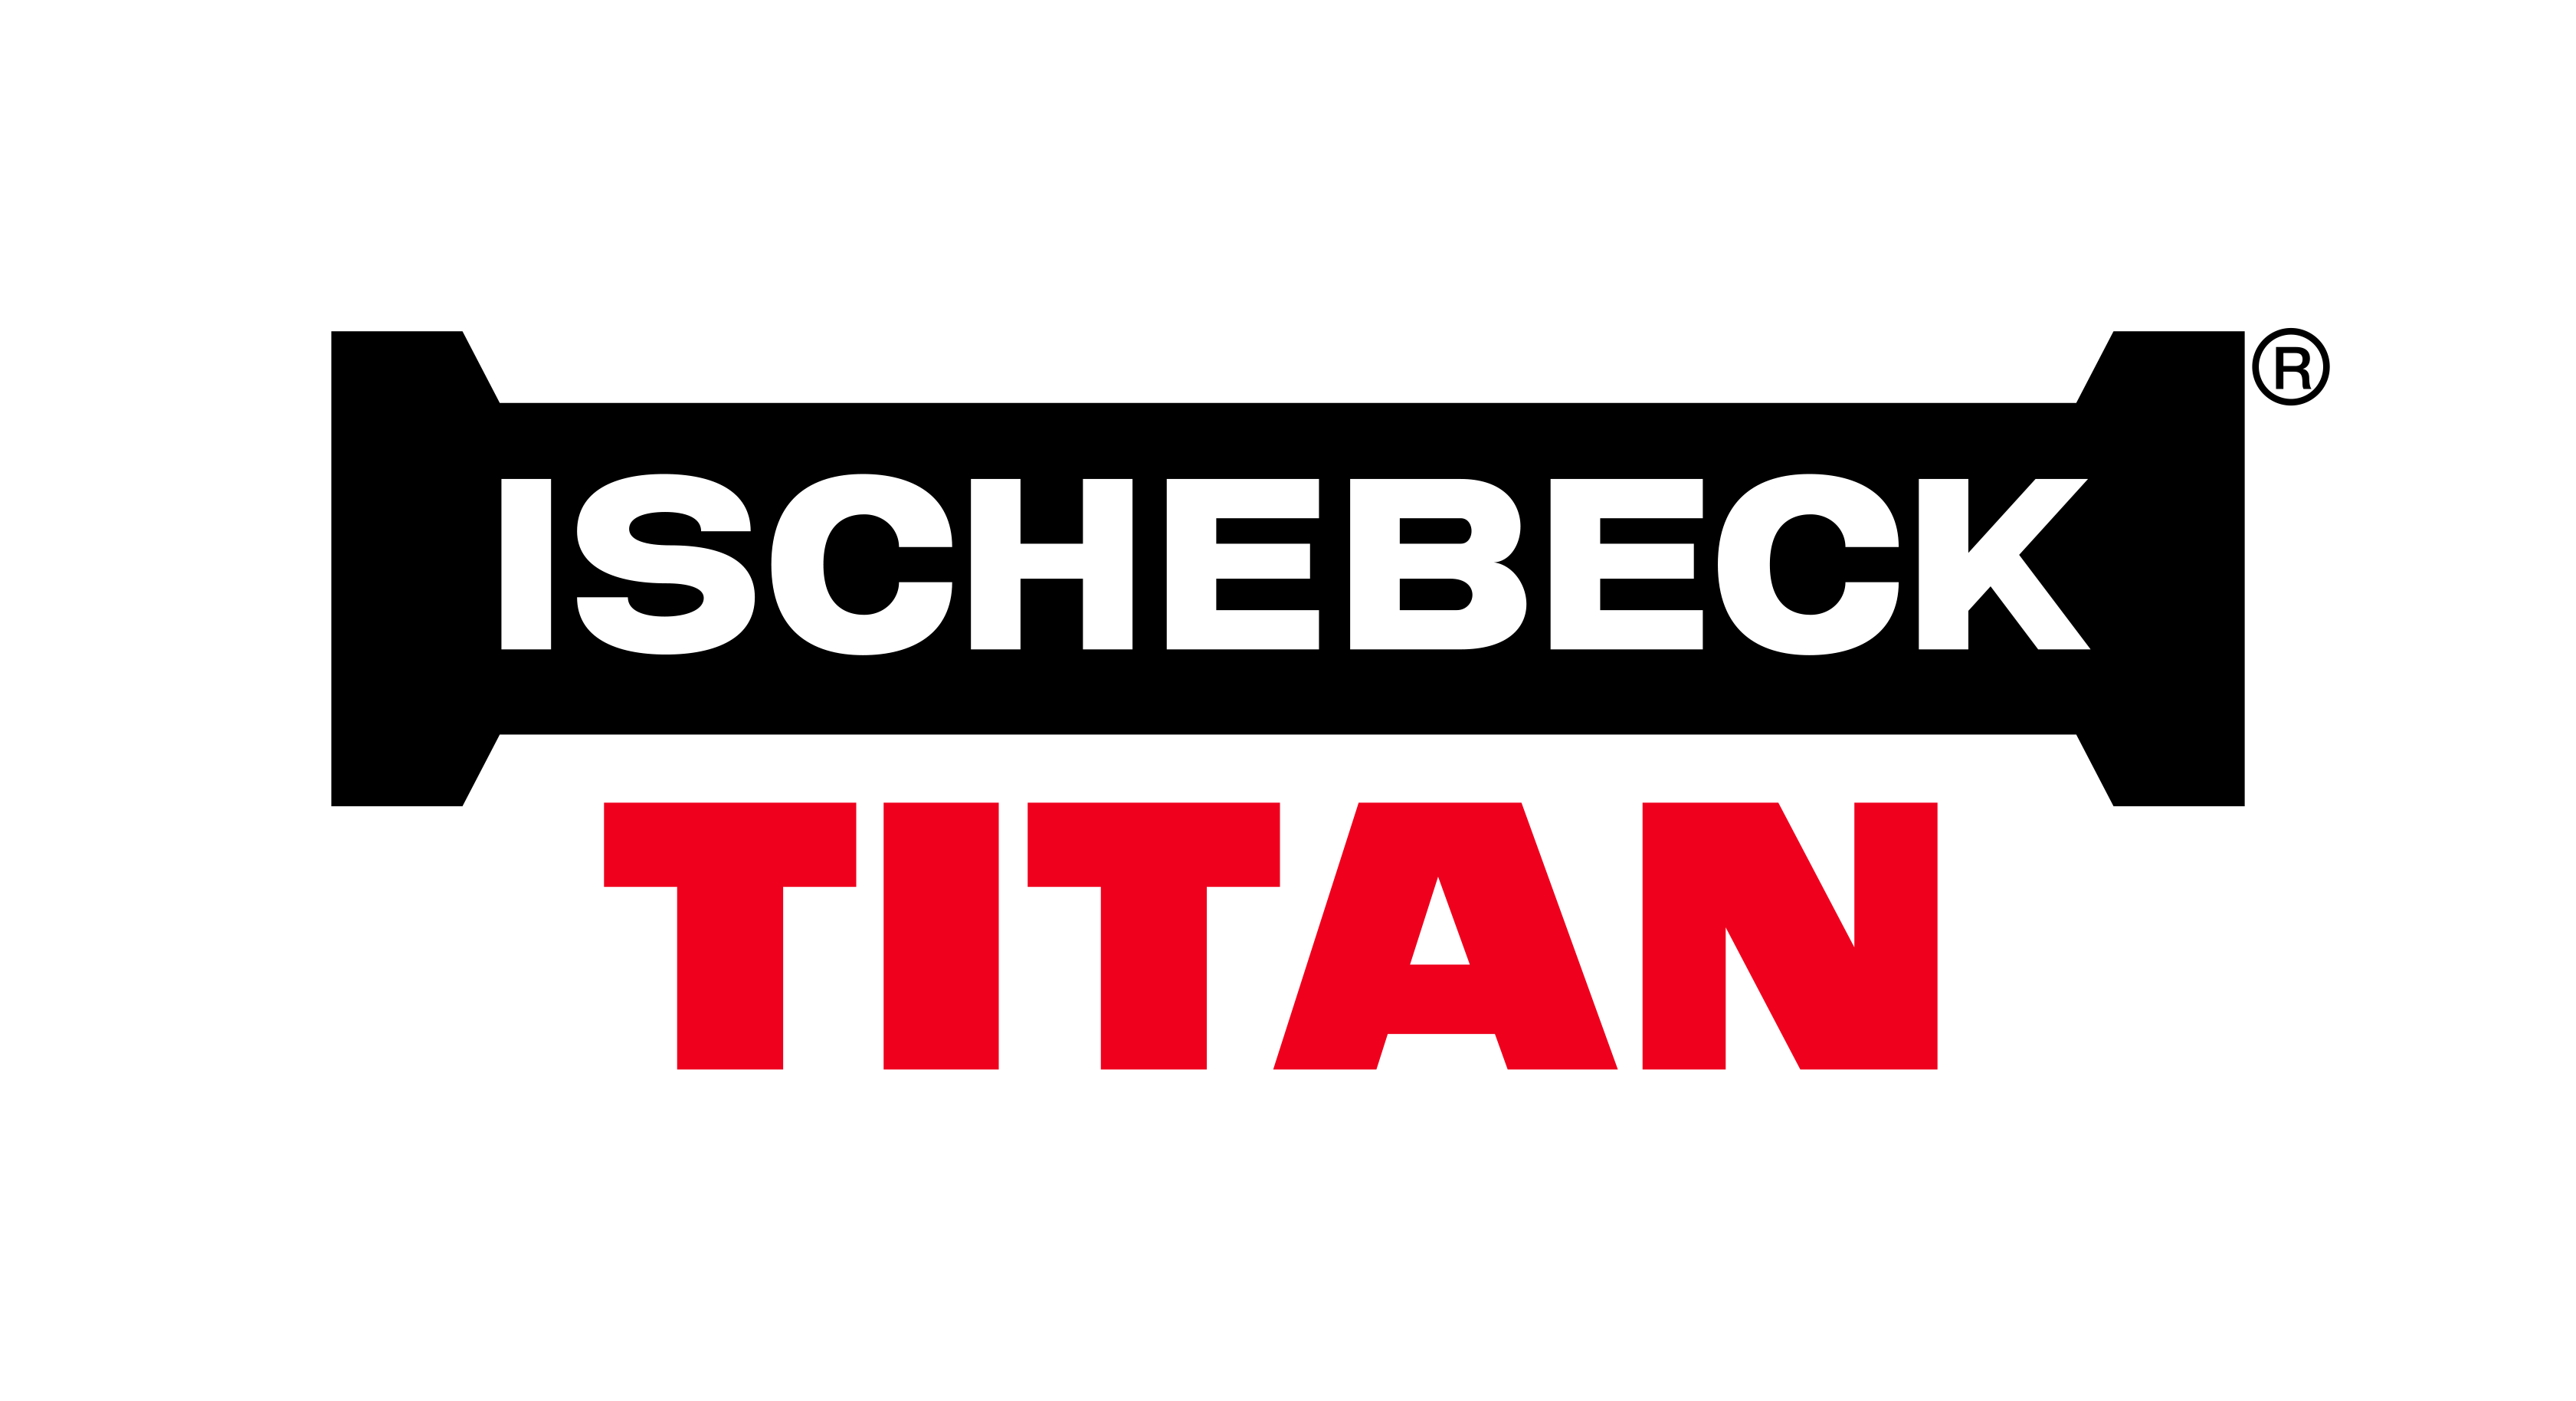 ischebeck logo